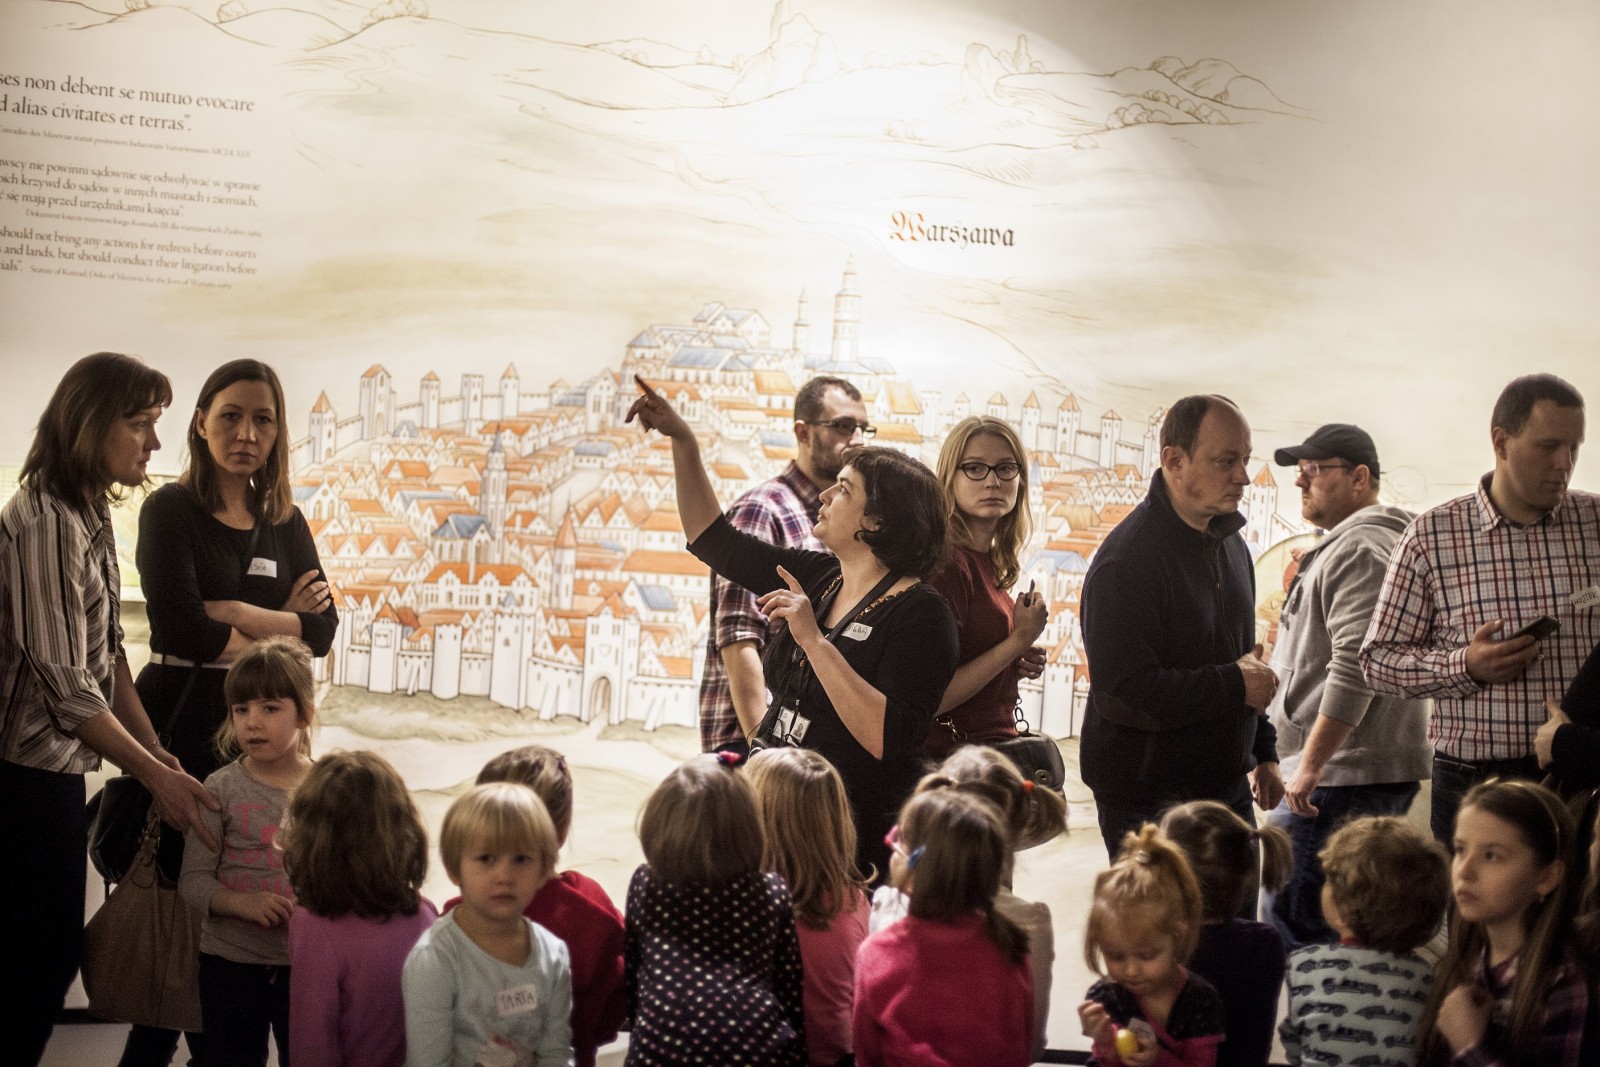 Grupa dzieci, za nimi grupa dorosłych, jedna z kobiet wskazuje coś wysoko w górze. Za plecami, w tle, średniowieczne przedstawienie planu Warszawy.